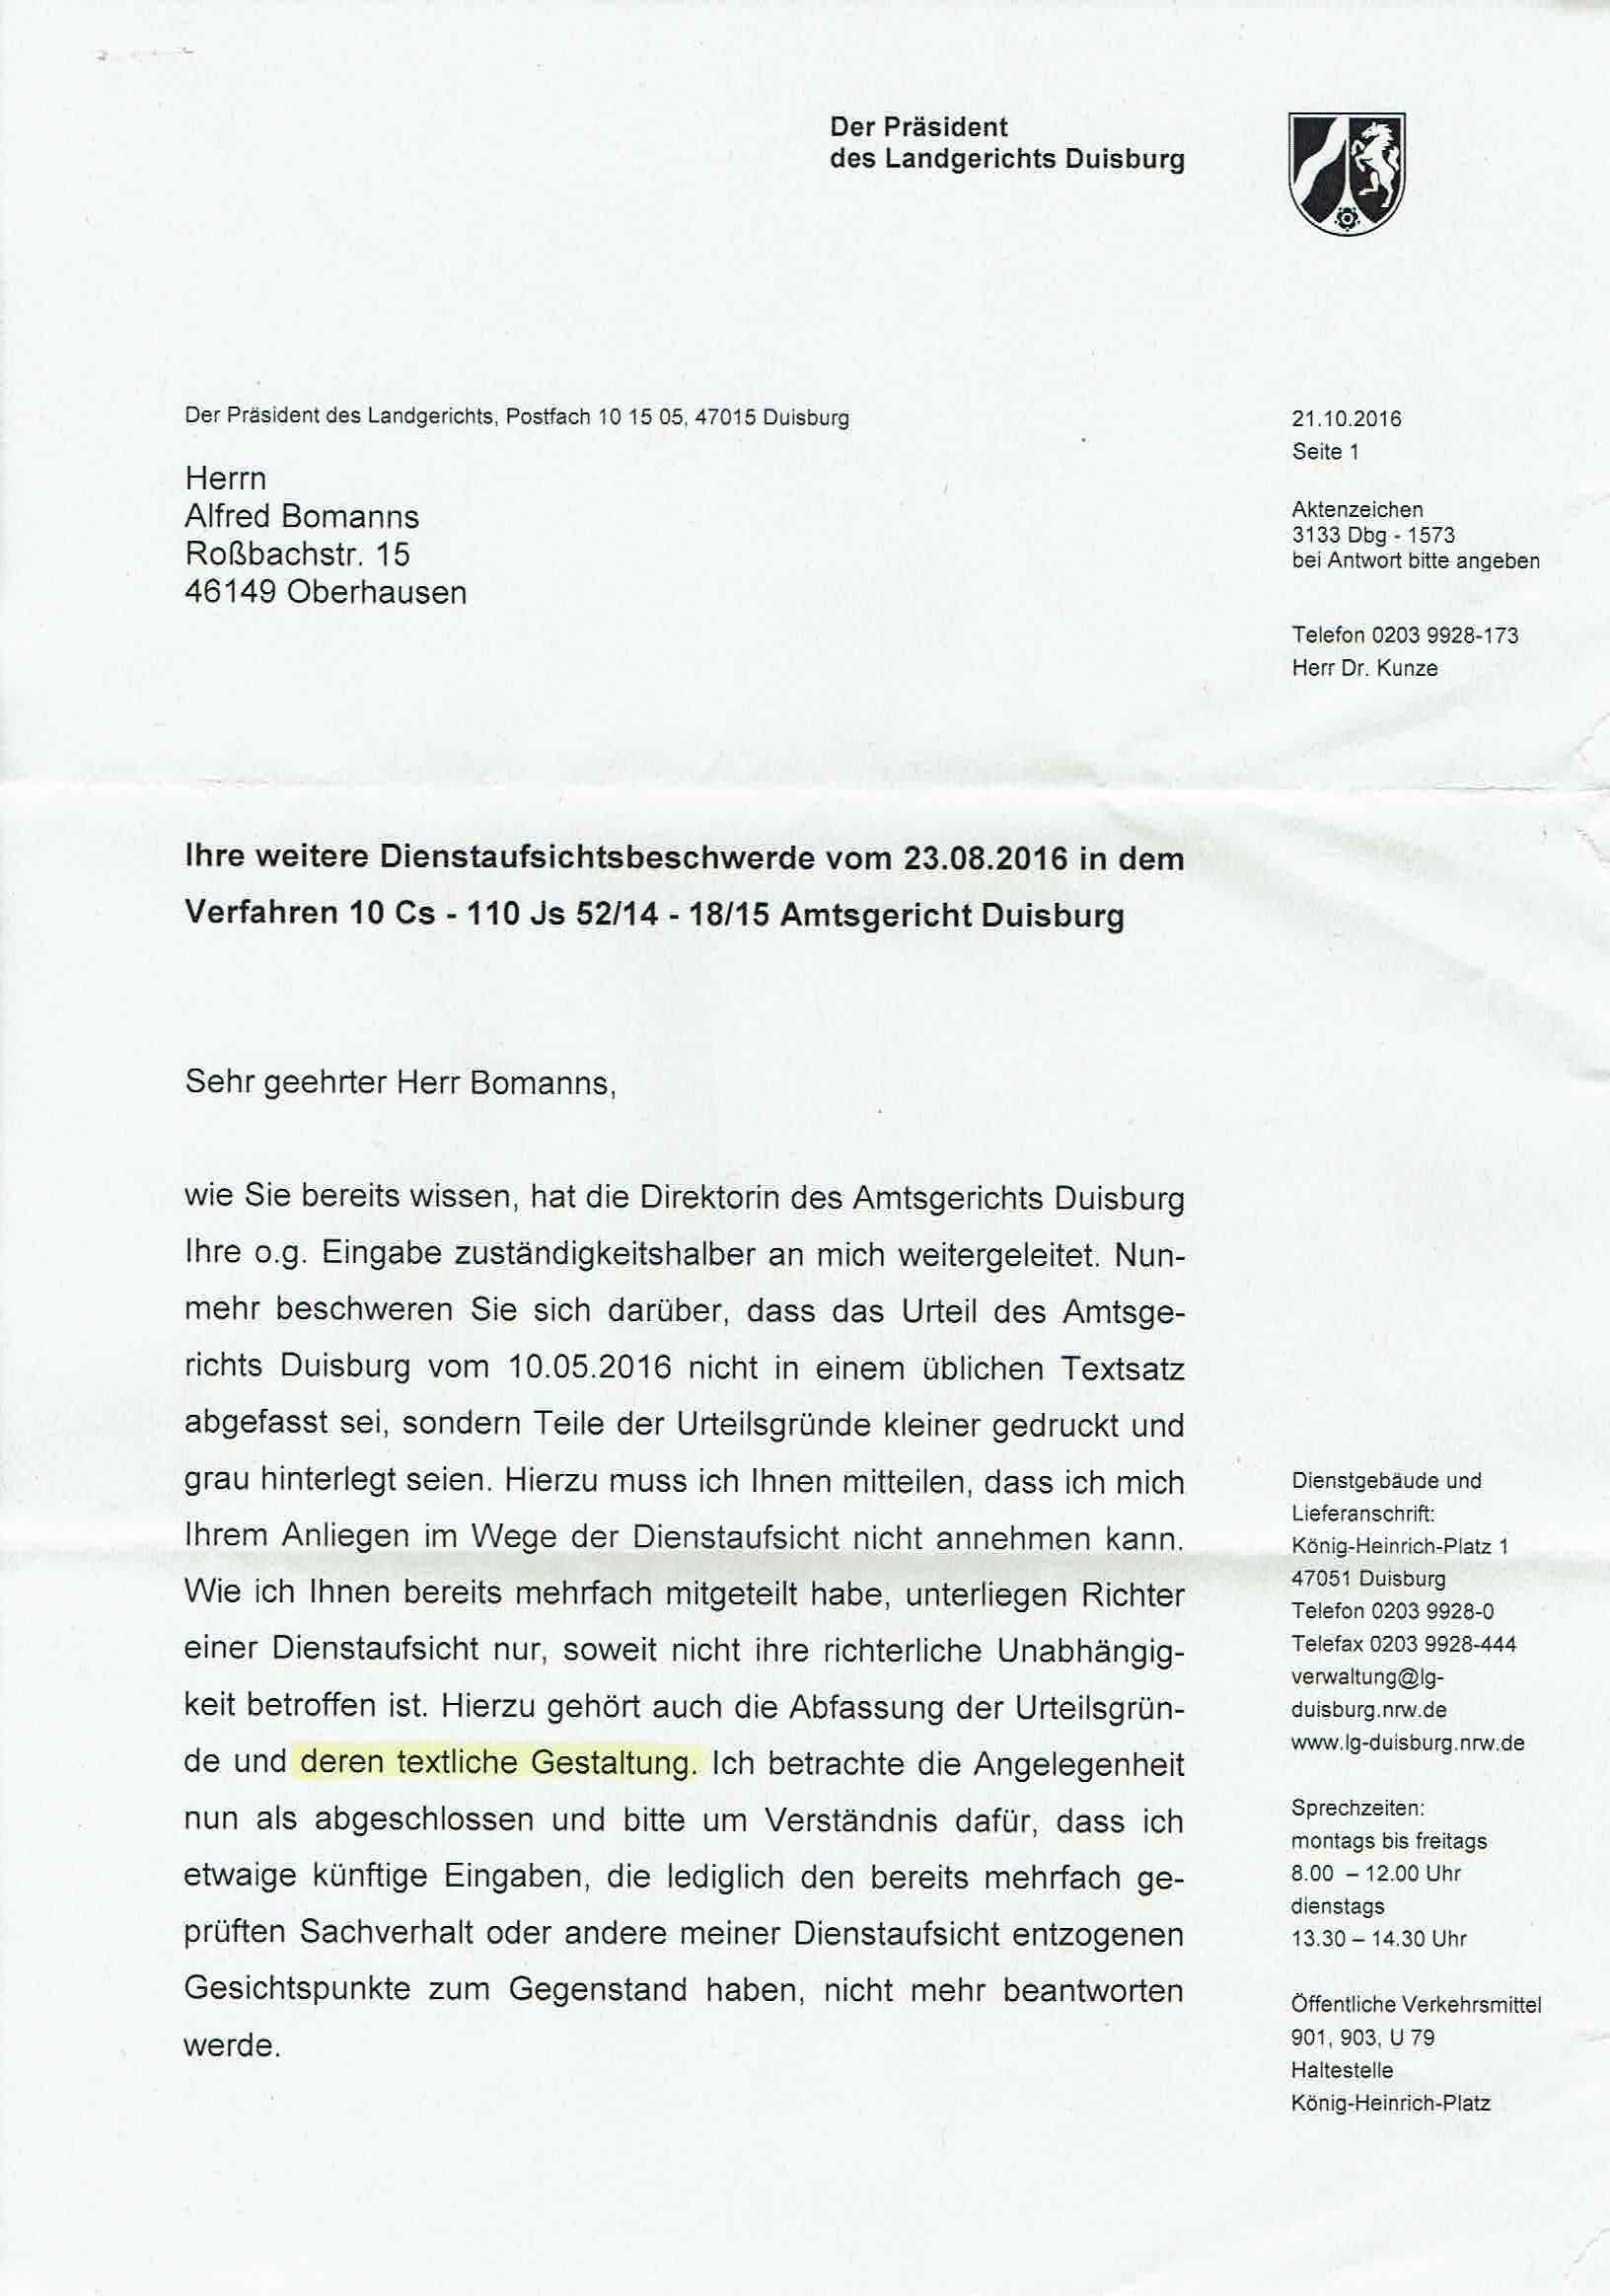 Antwort des Präsidenten des Landgerichts Duisburg vom 21.10.2016, Seite 1